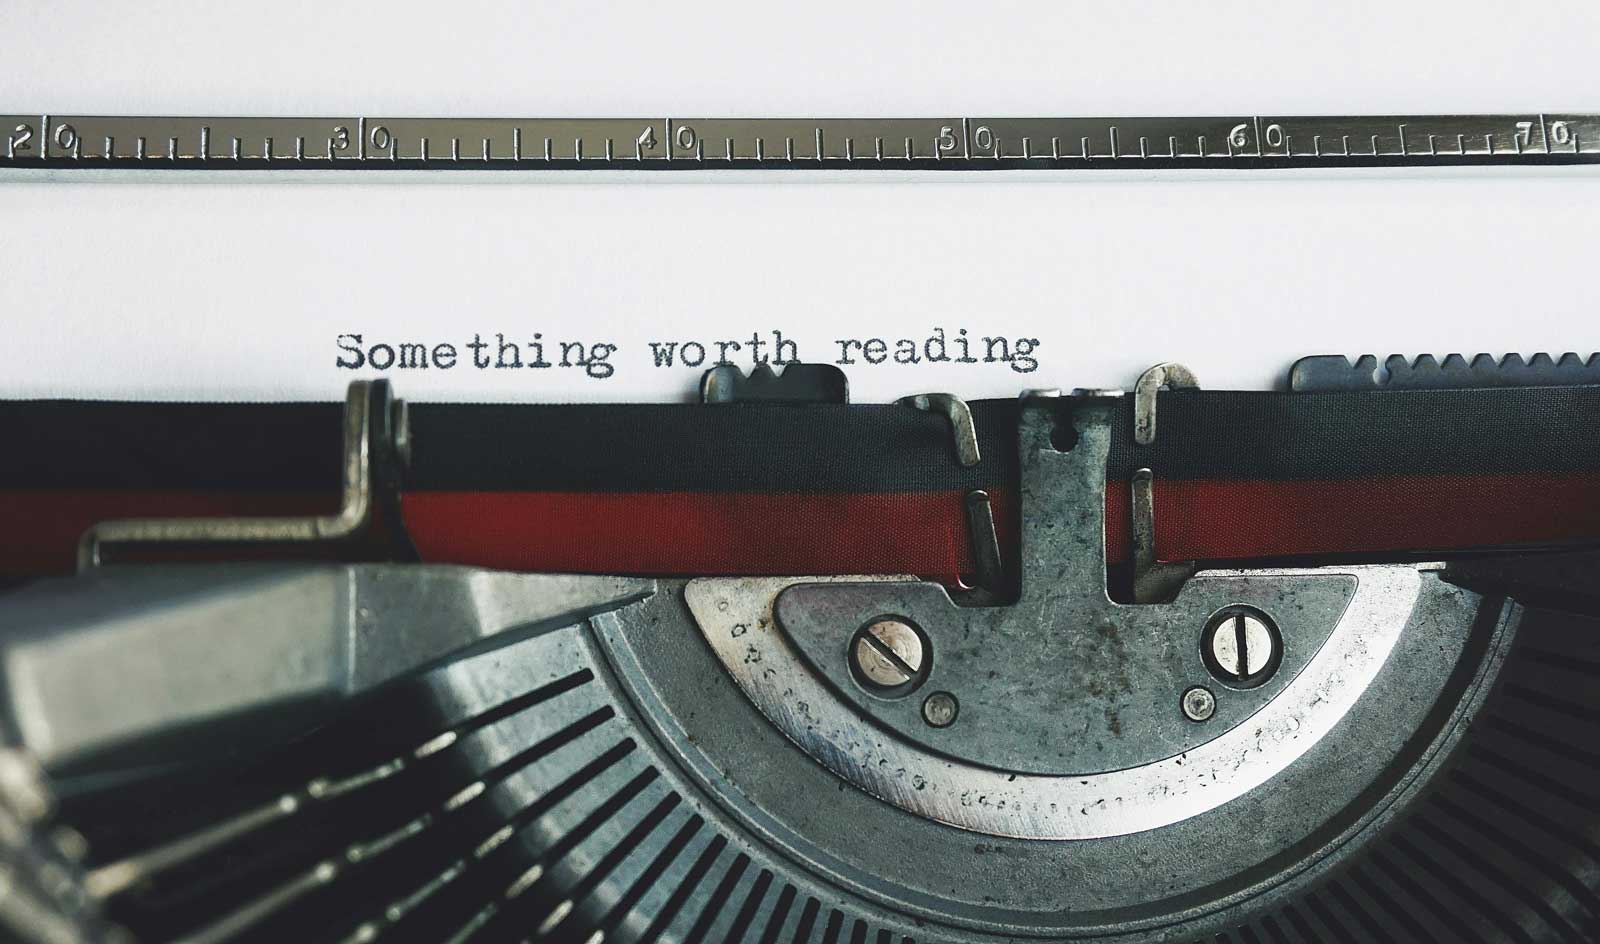 Old typewriter typing words "Something worth reading"